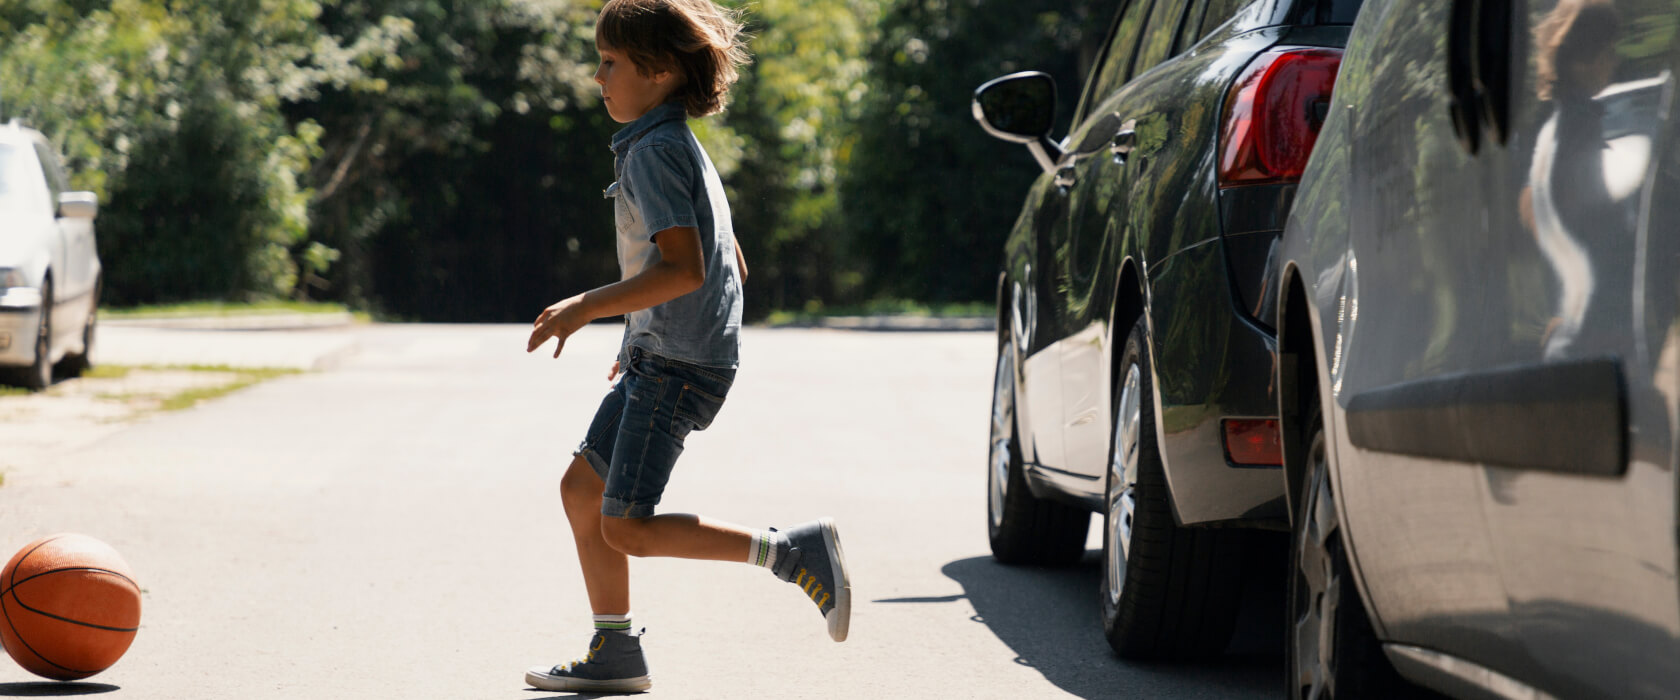 Junge rennt zwischen parkenden Autos durch